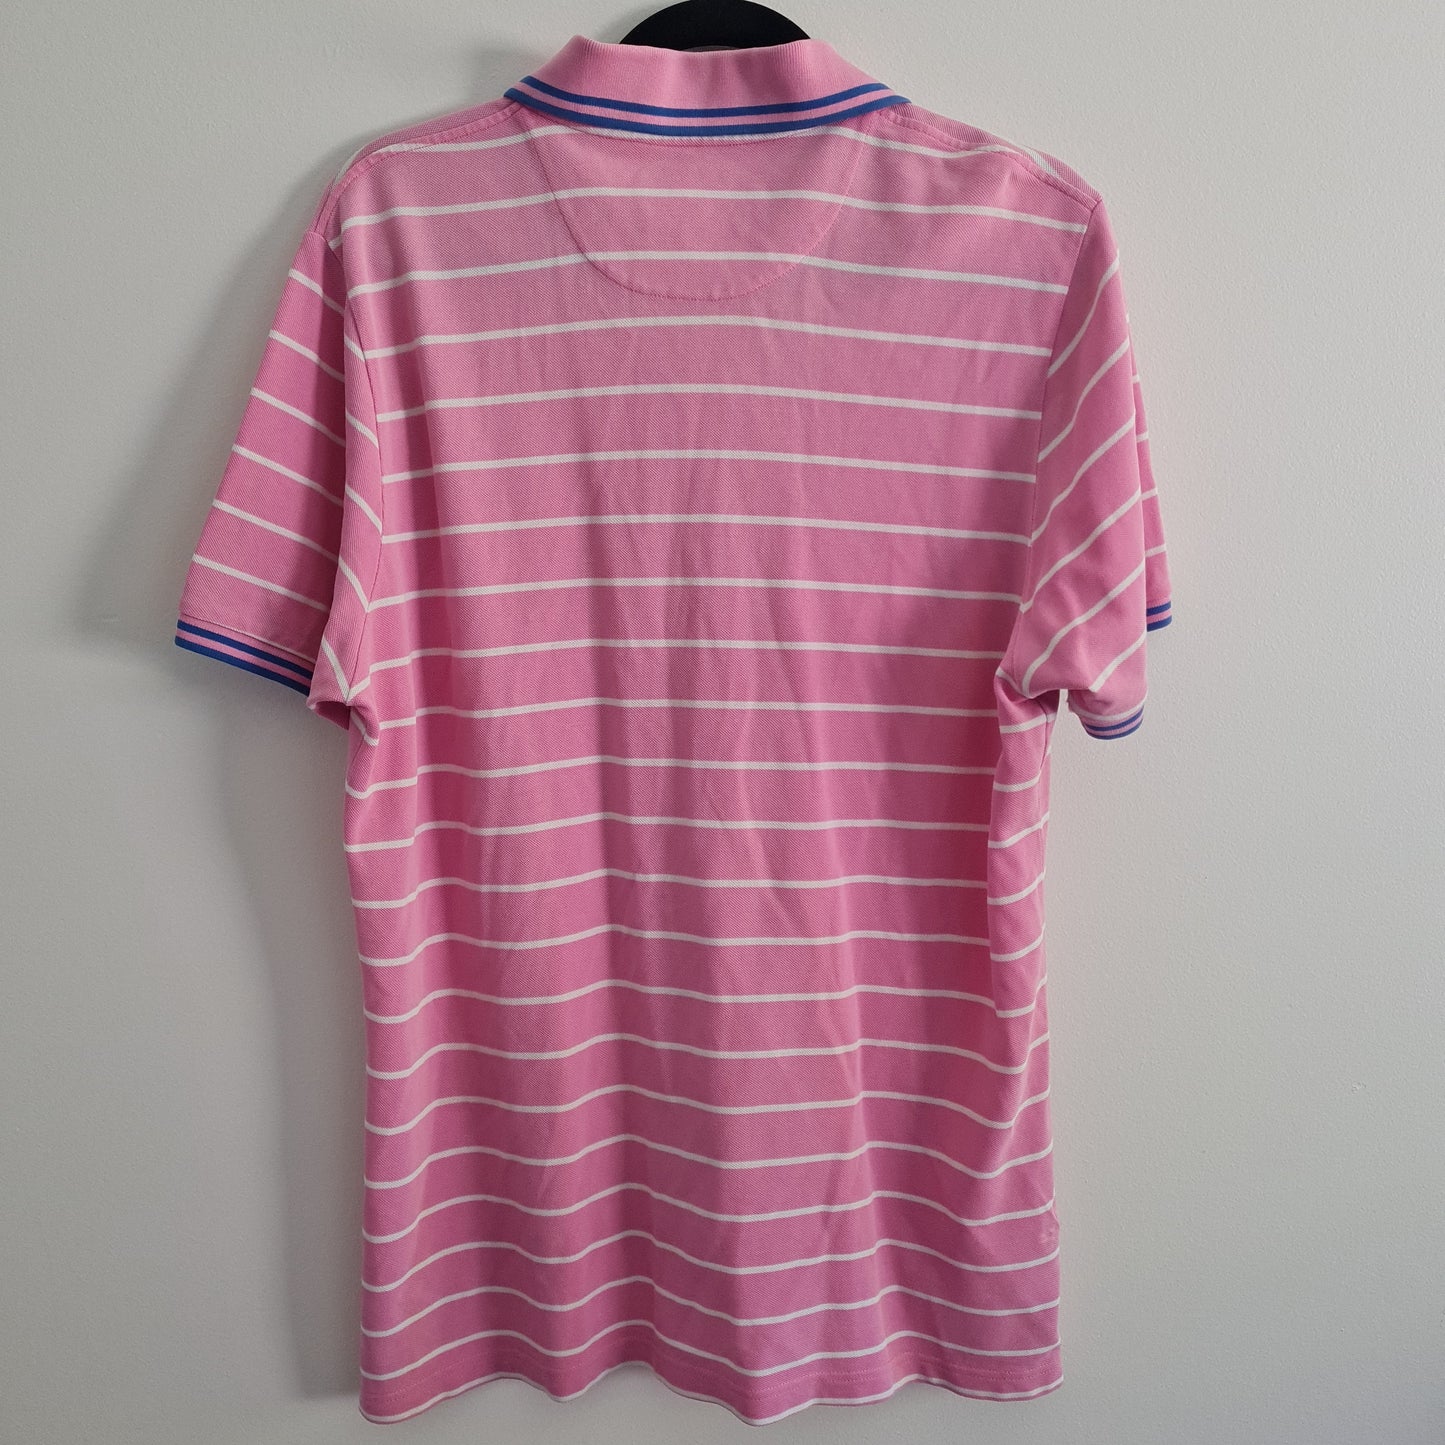 Oxford Company Pink White Collard Shirt Size L